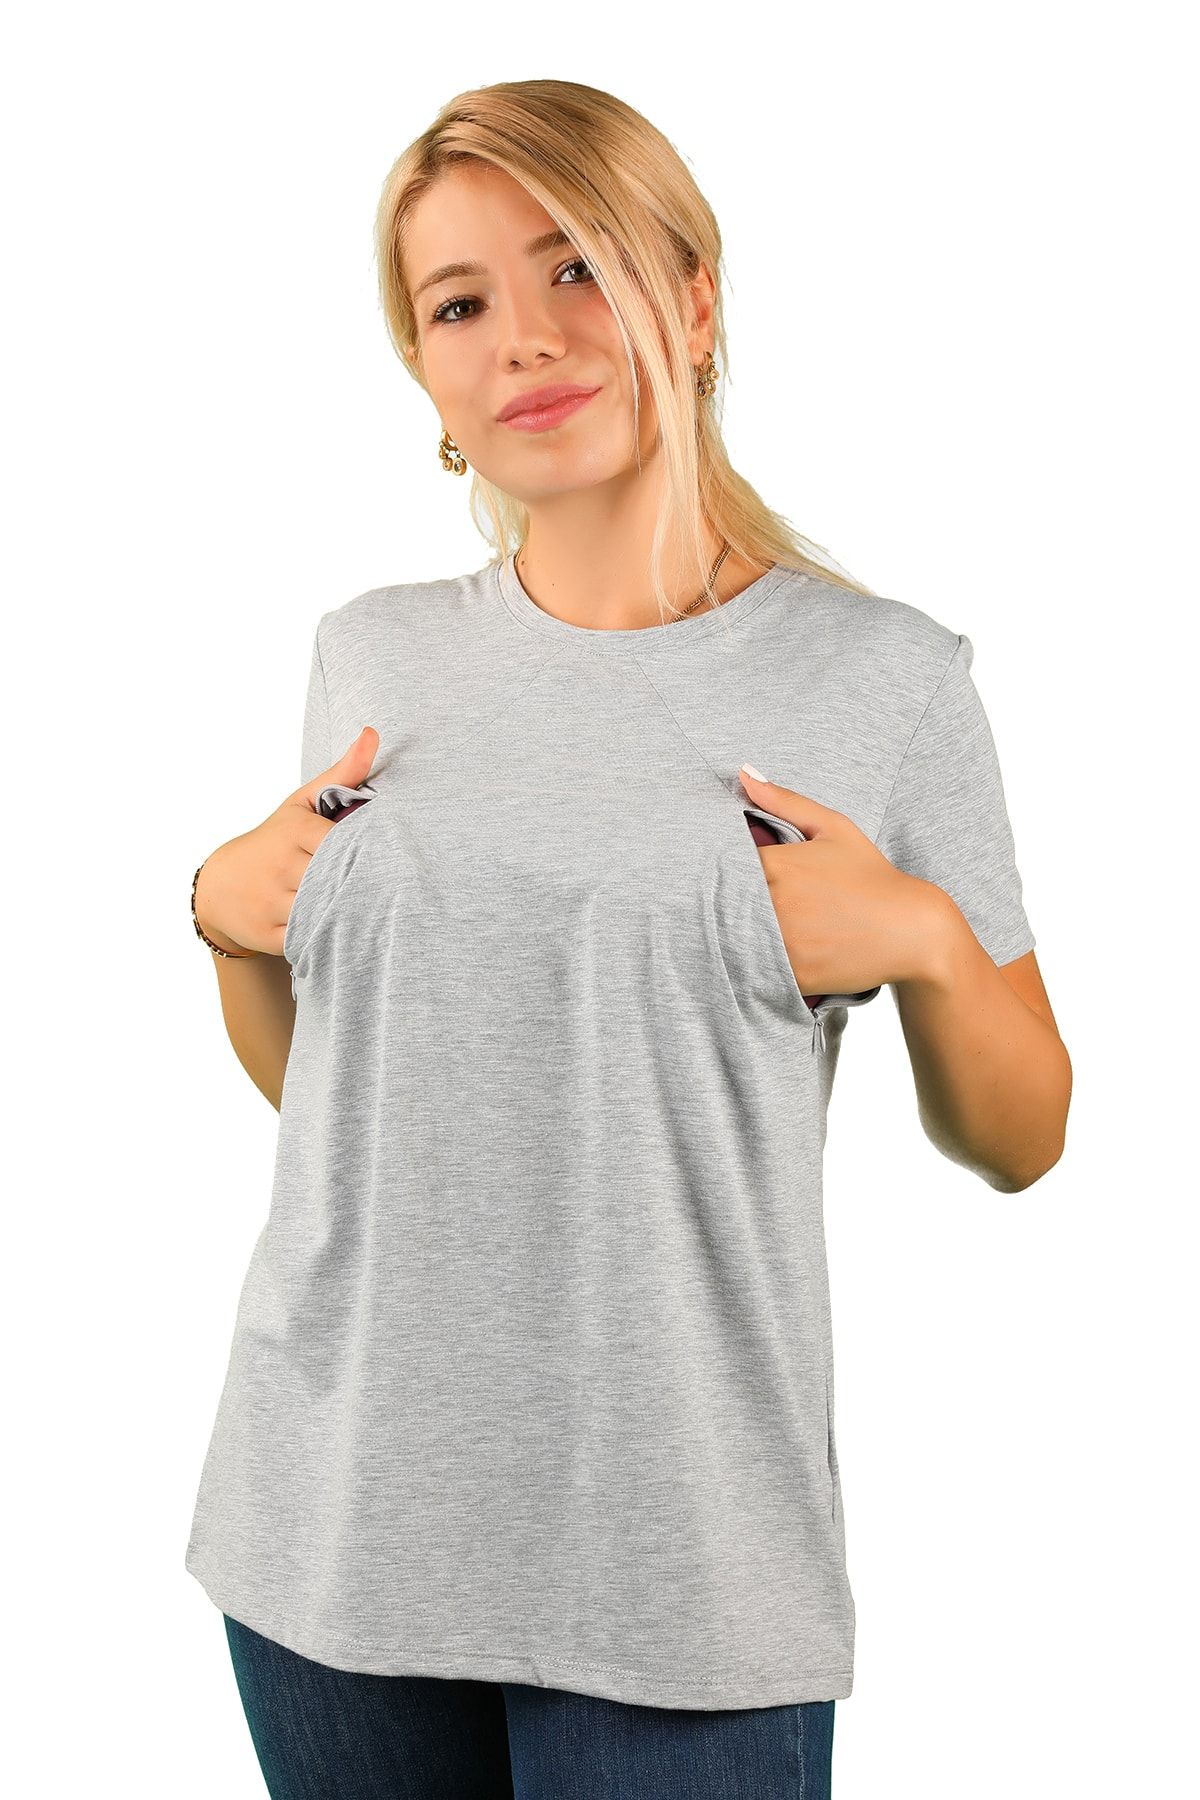 BALİNS Kadın Fermuarlı Emzirme T-shirt Gri